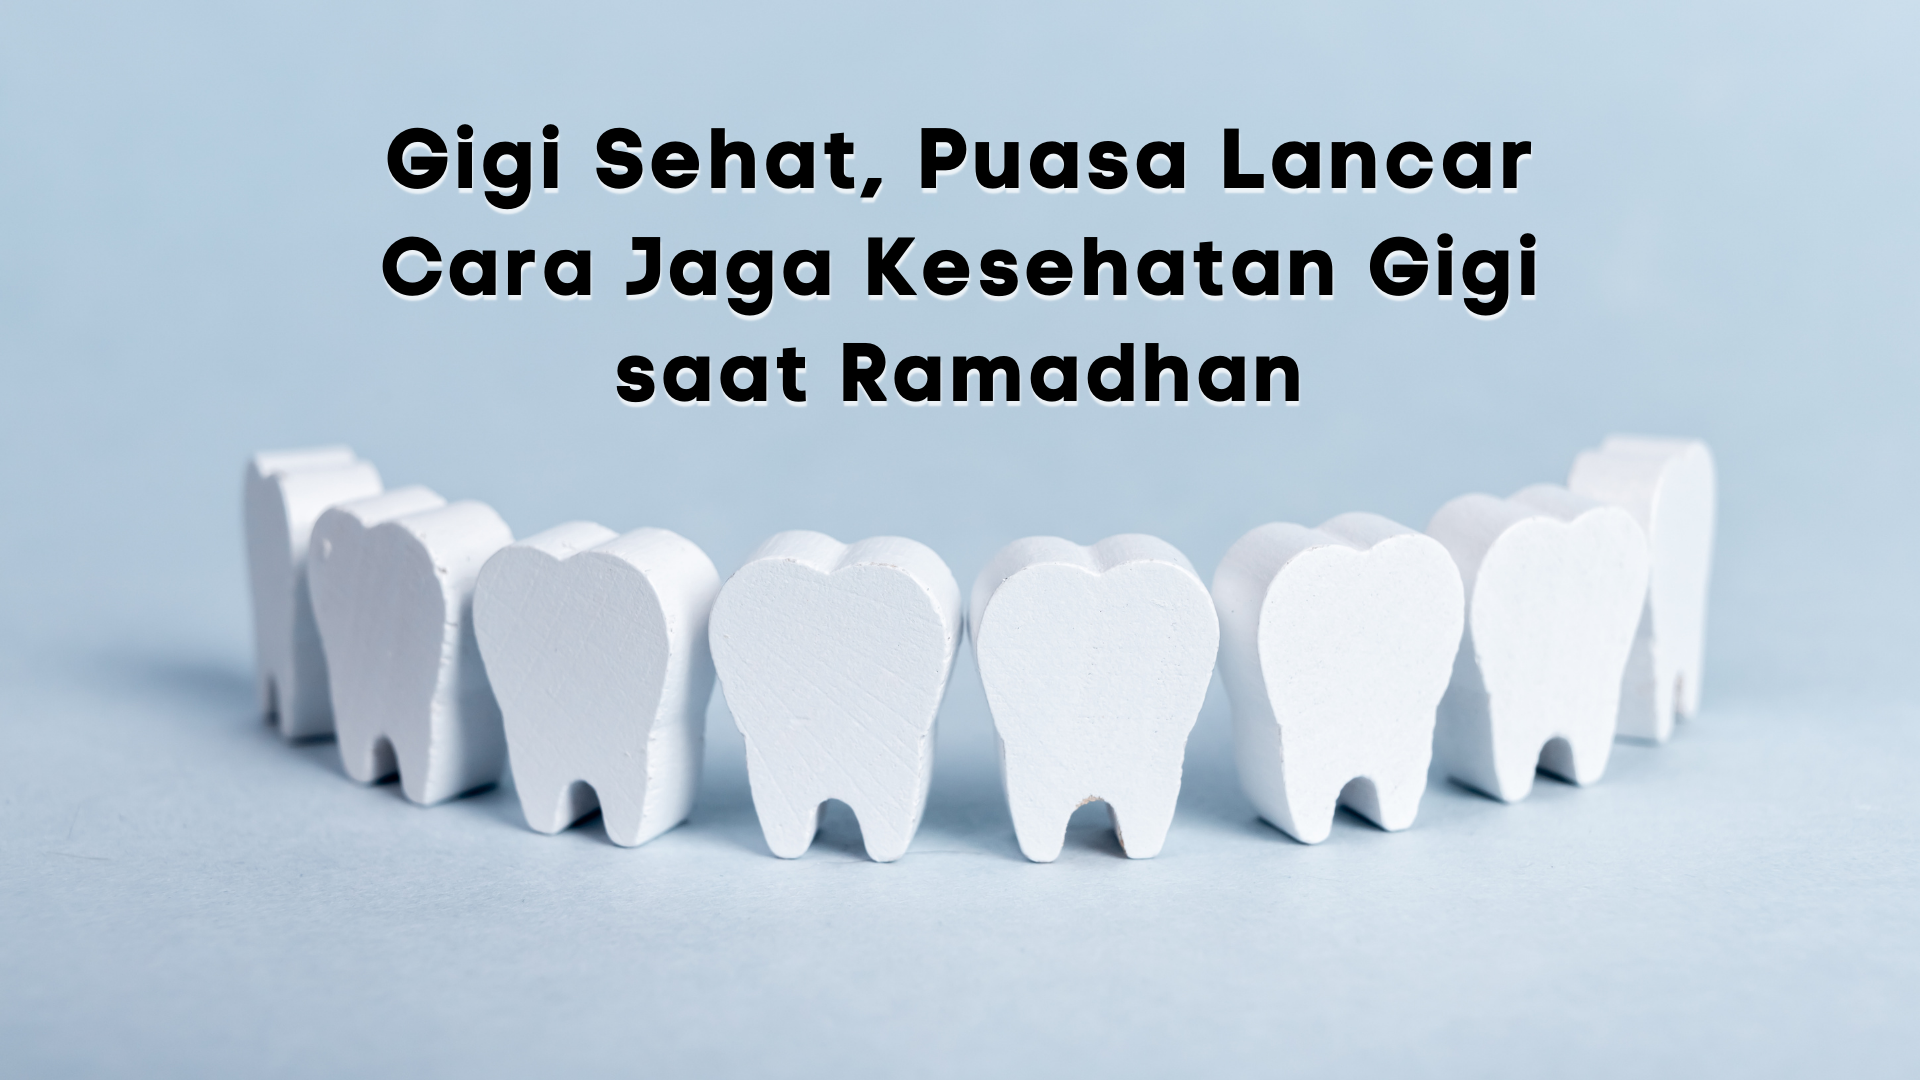 Gigi Sehat, Puasa Lancar: Cara Jaga Kesehatan Gigi saat Ramadhan